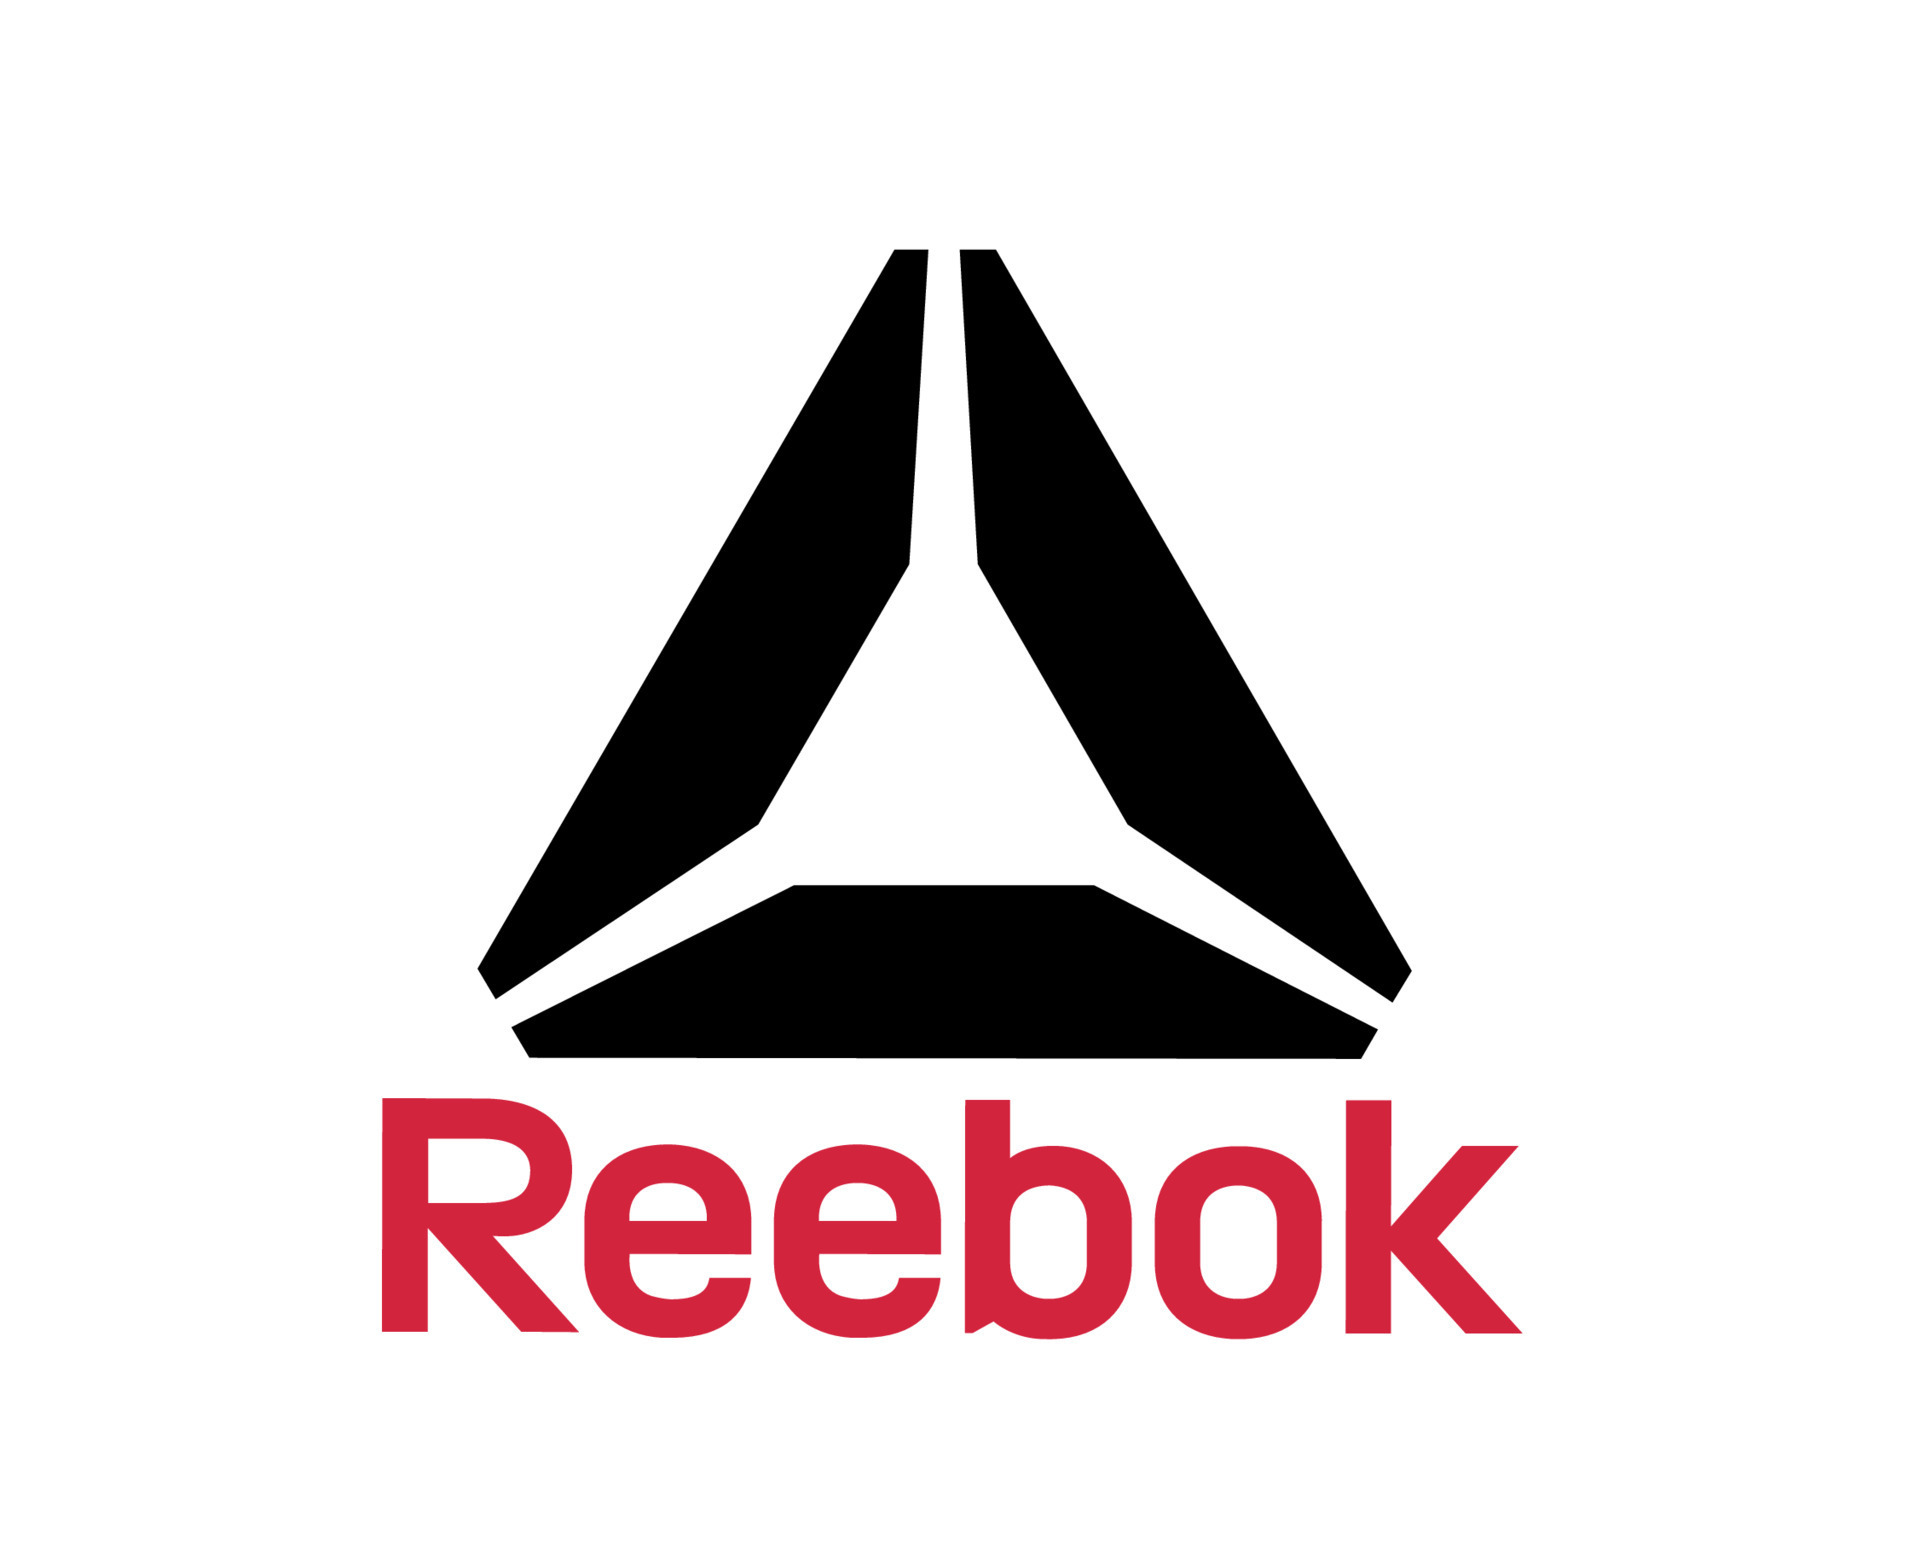 Reebok Brand Logo Symbol With Name Clothes Design Icon Abstract Vector 23869617 Vector Vecteezy